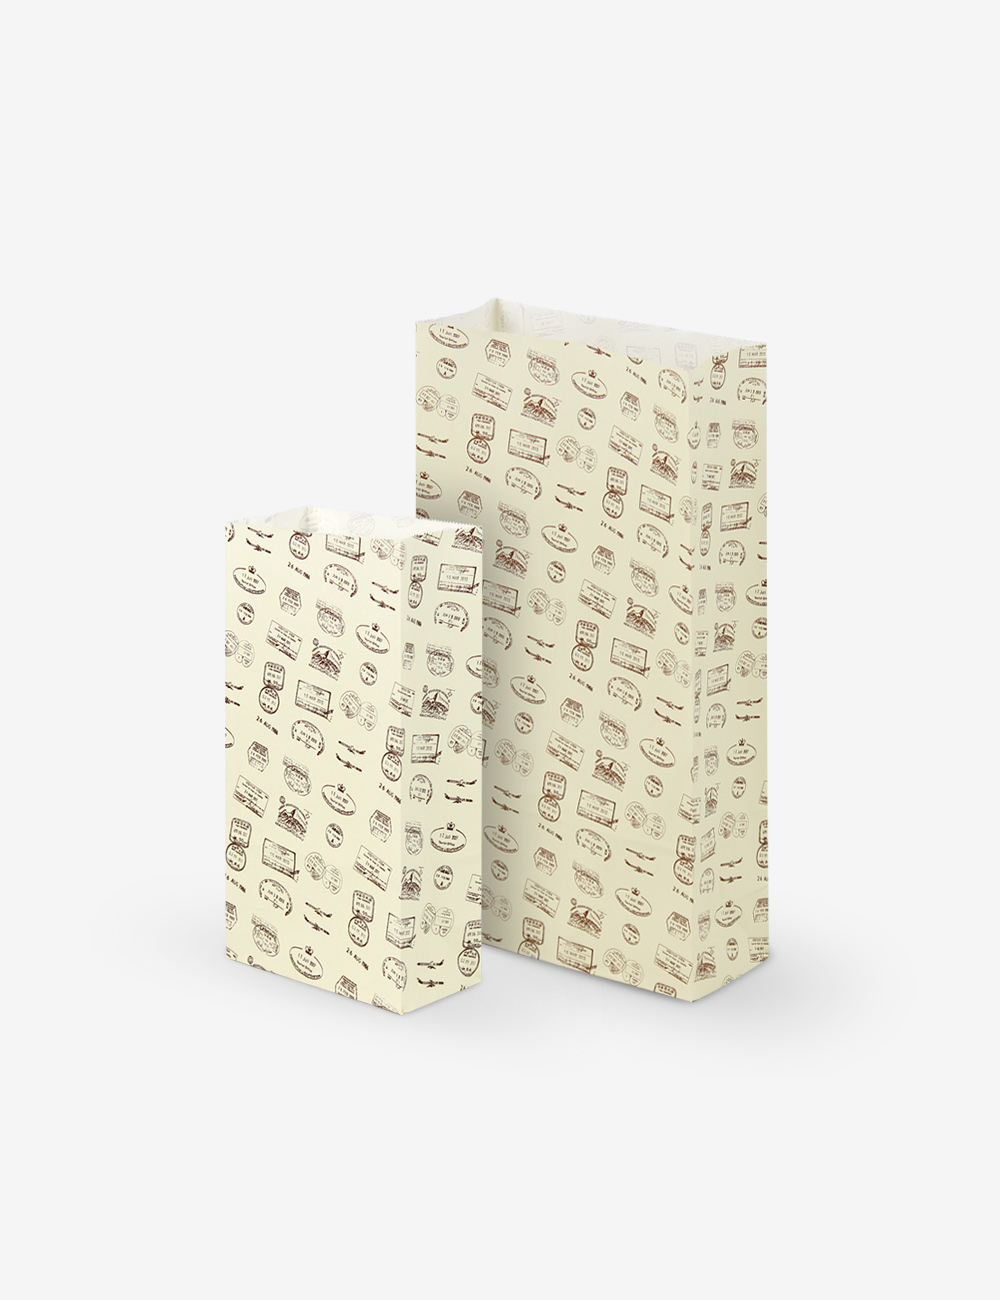 스탬프 옐로우 각대 종이봉투 (1,000장) 2가지 사이즈